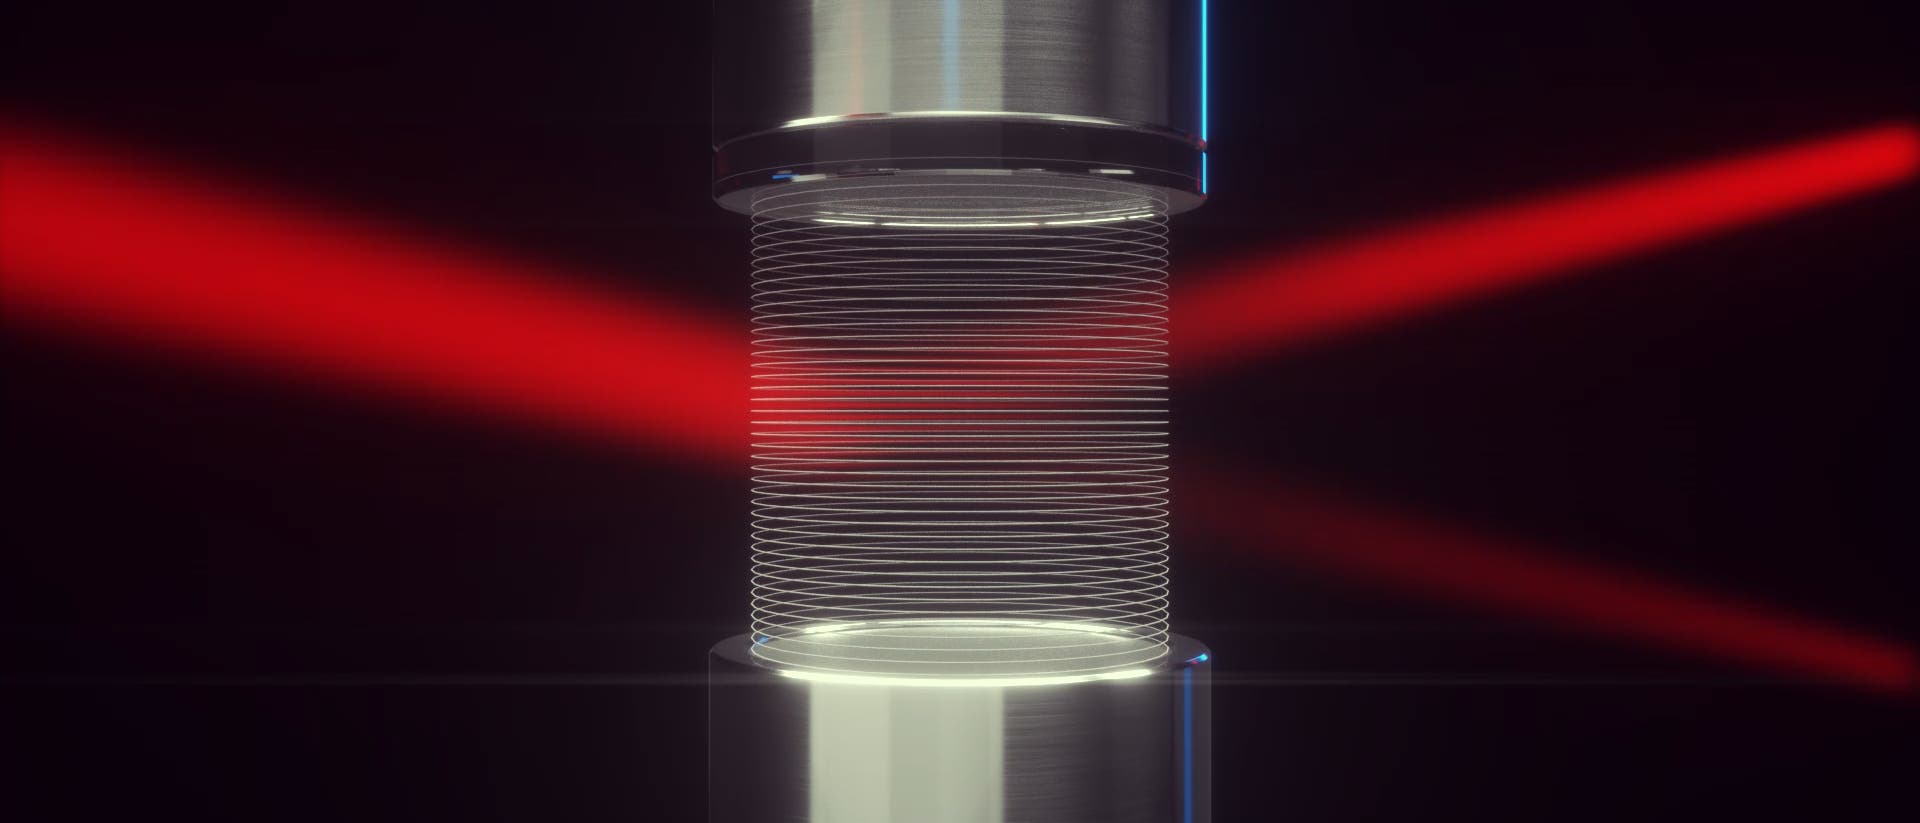 Ein Laserlichtstrahl läuft zwischen einer Lautsprecher-Reflektor-Anordnung hindurch, die ein Gitter aus Luft erzeugt